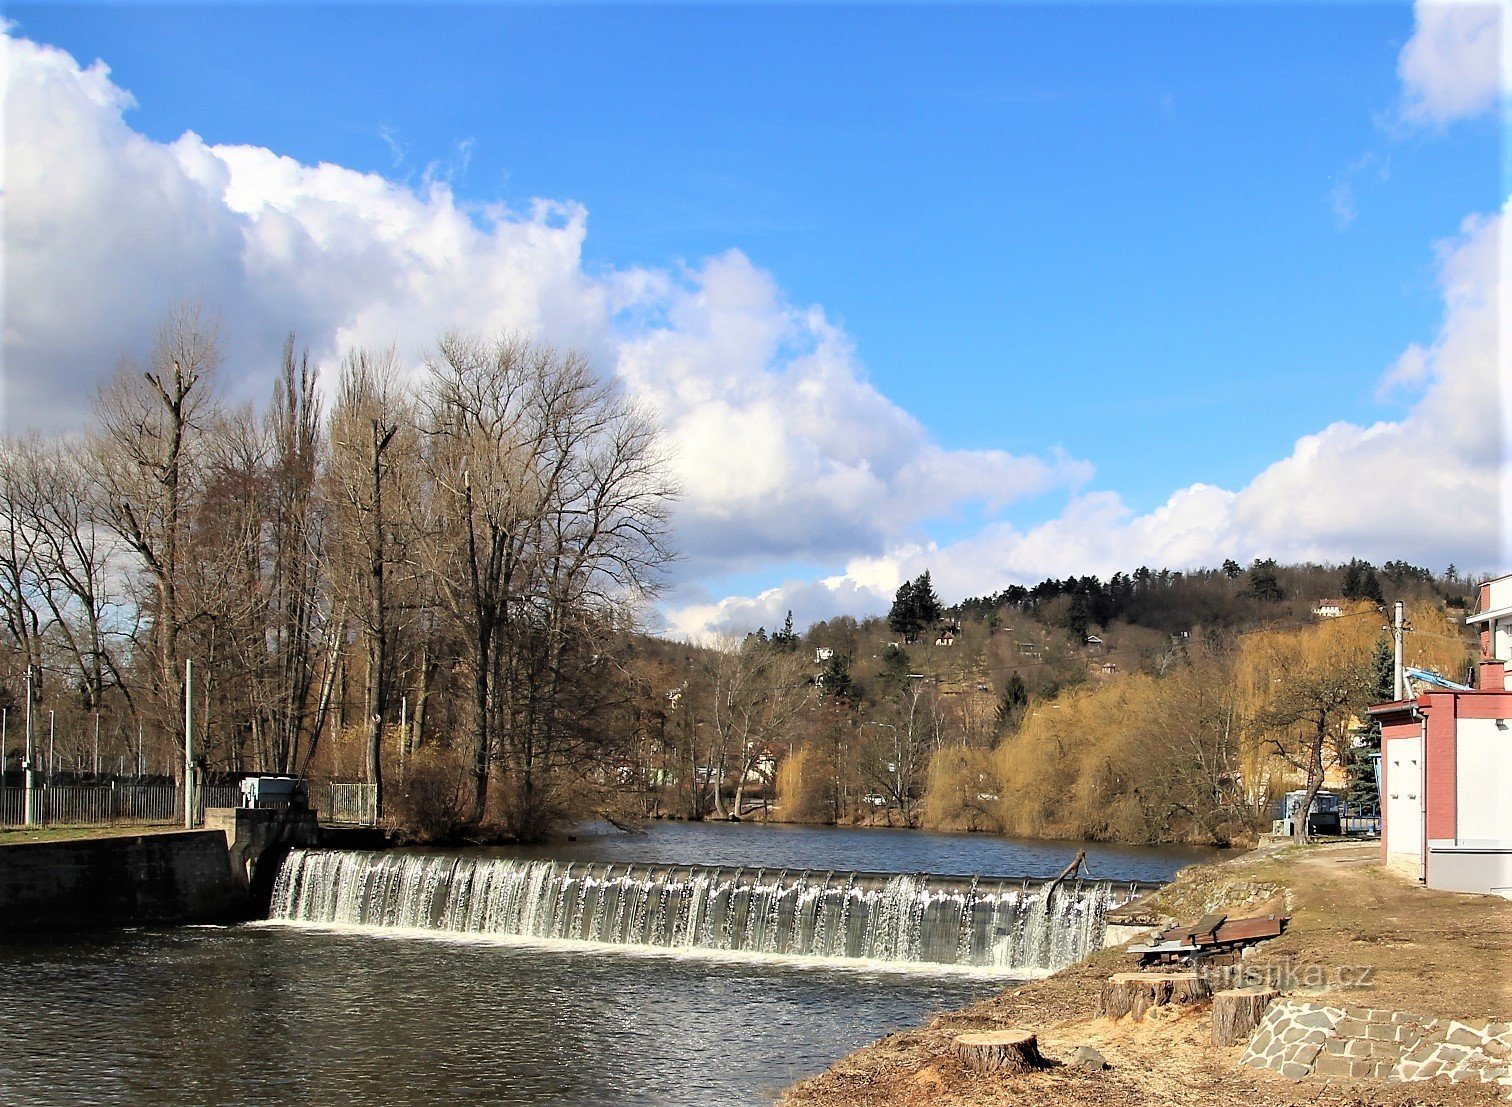 Locul evenimentului este situat deasupra barajului Komin, lângă malul râului Svratka